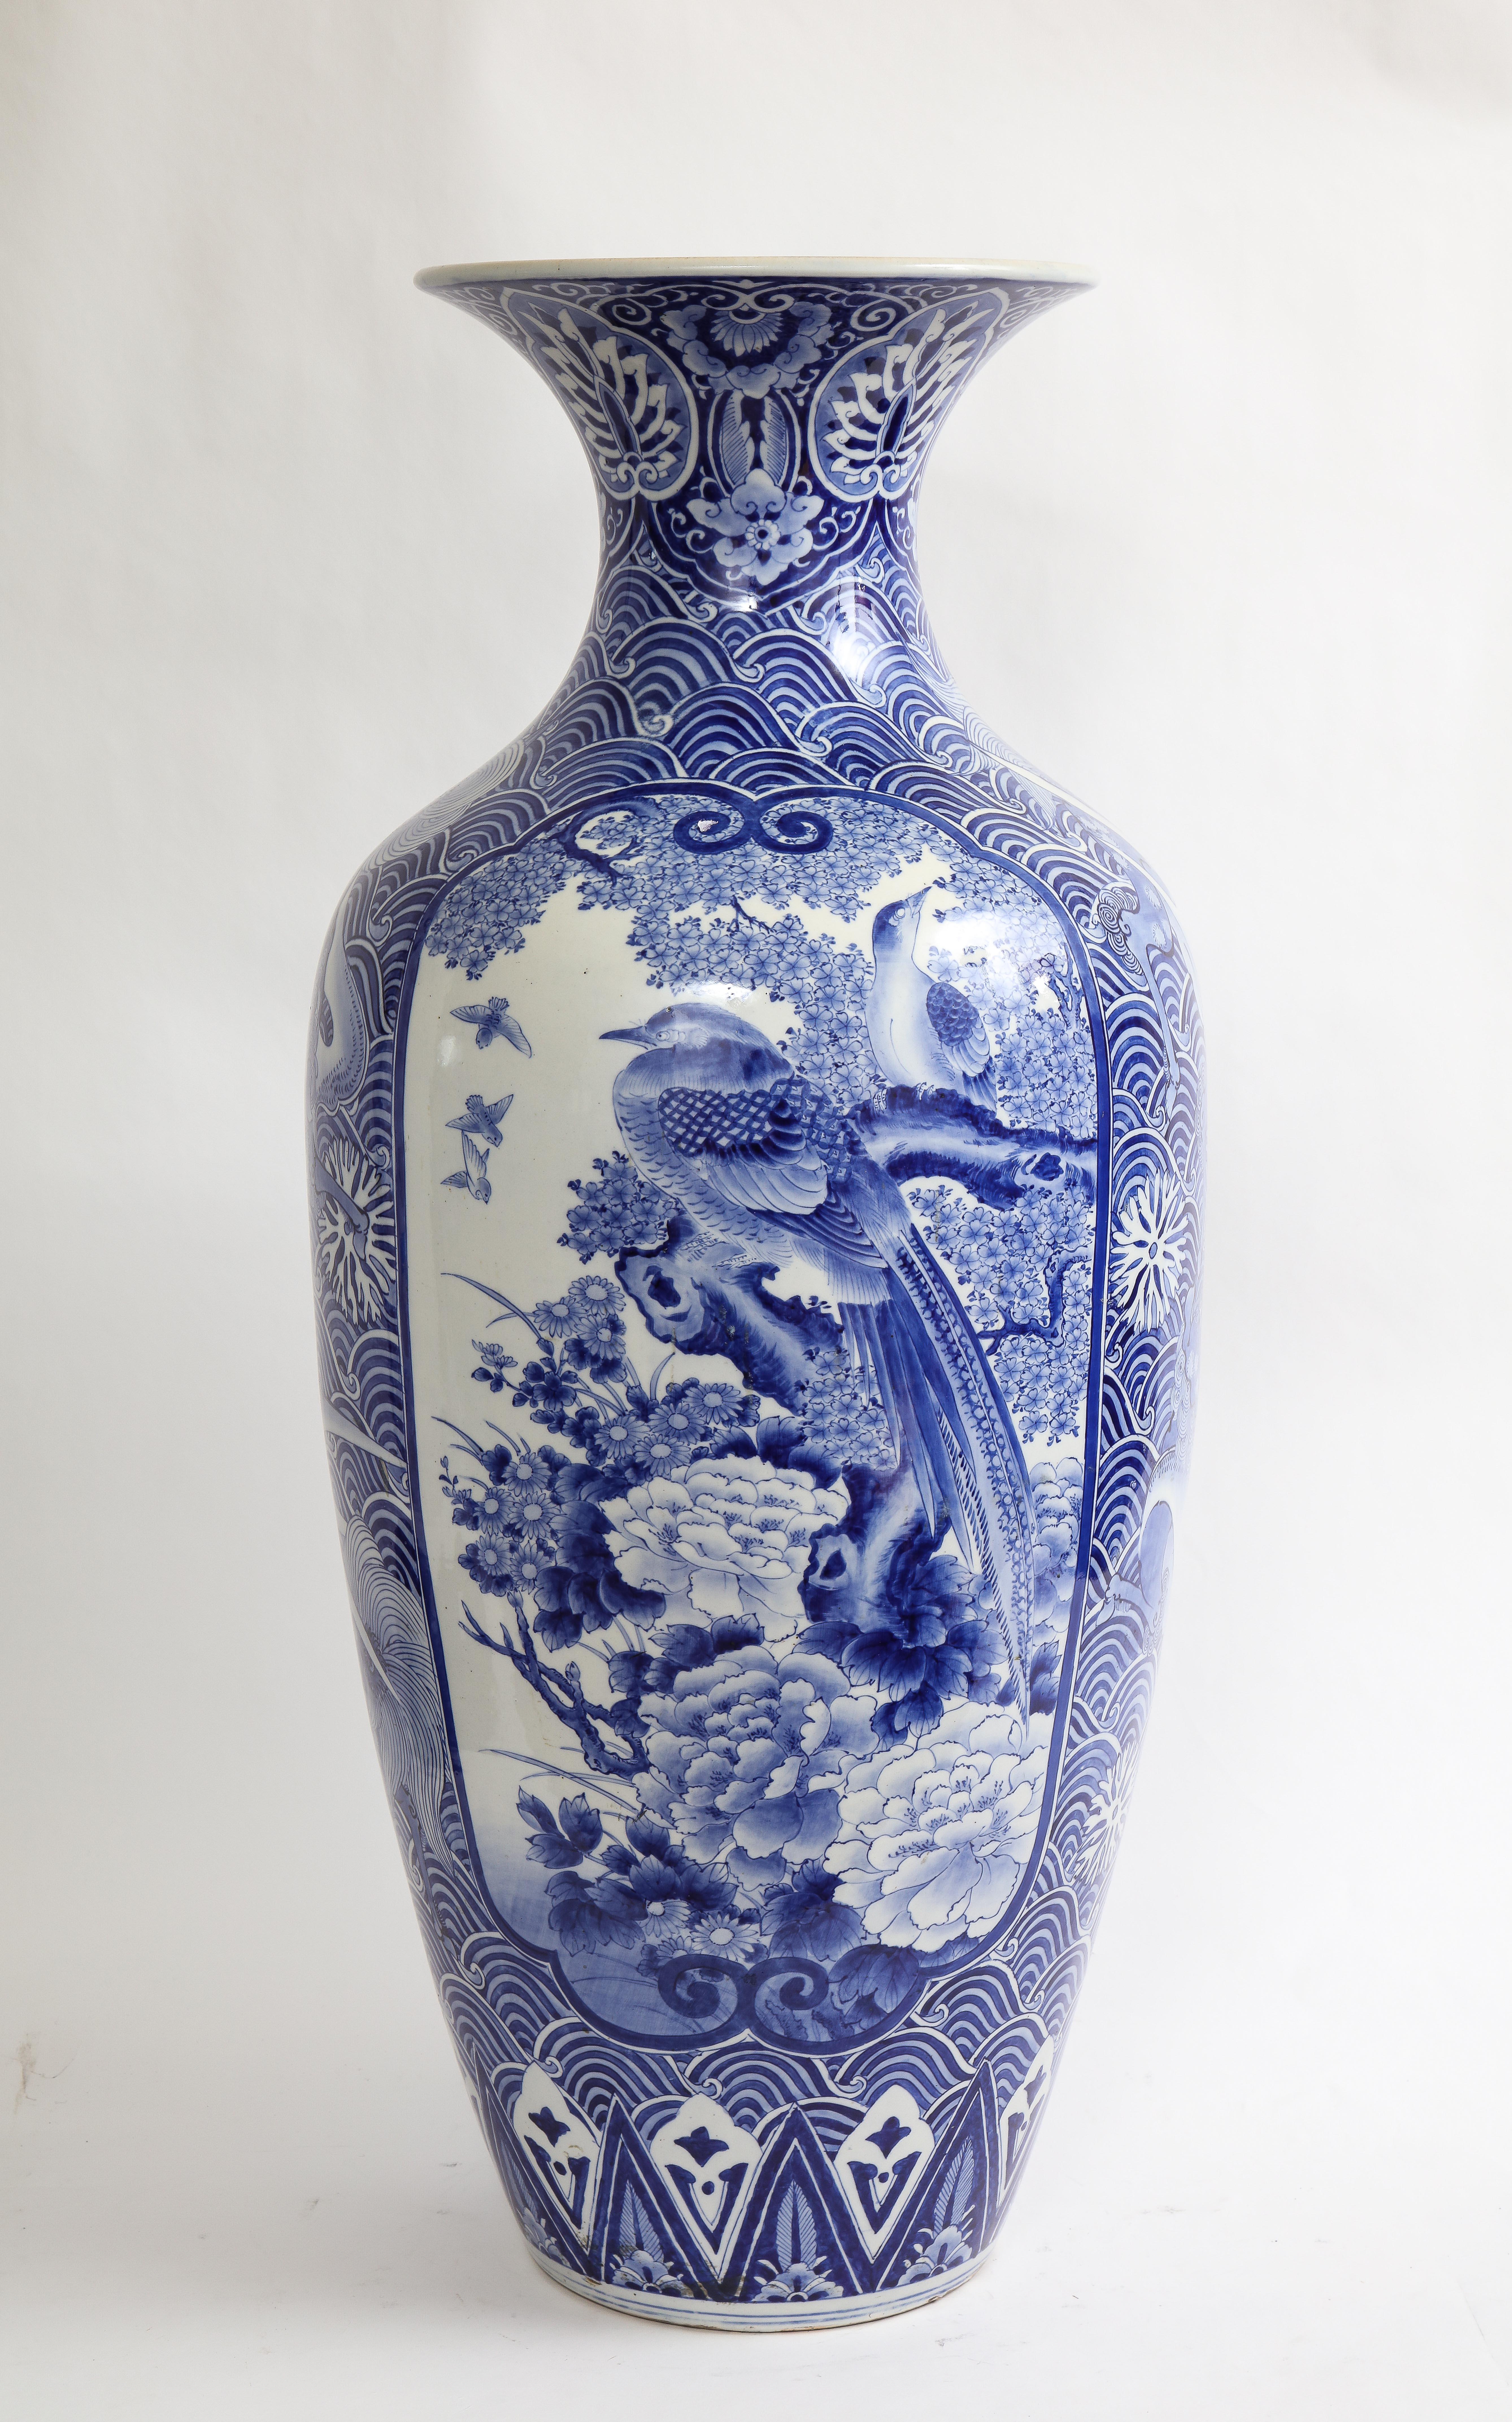 Vase bleu et blanc de taille Palace de la période Meiji (1868-1912) à décor de phénix. Ce vase est absolument magnifique avec un incroyable éventail de décorations bleues peintes à la main. De chaque côté du vase se trouvent de grands cartouches